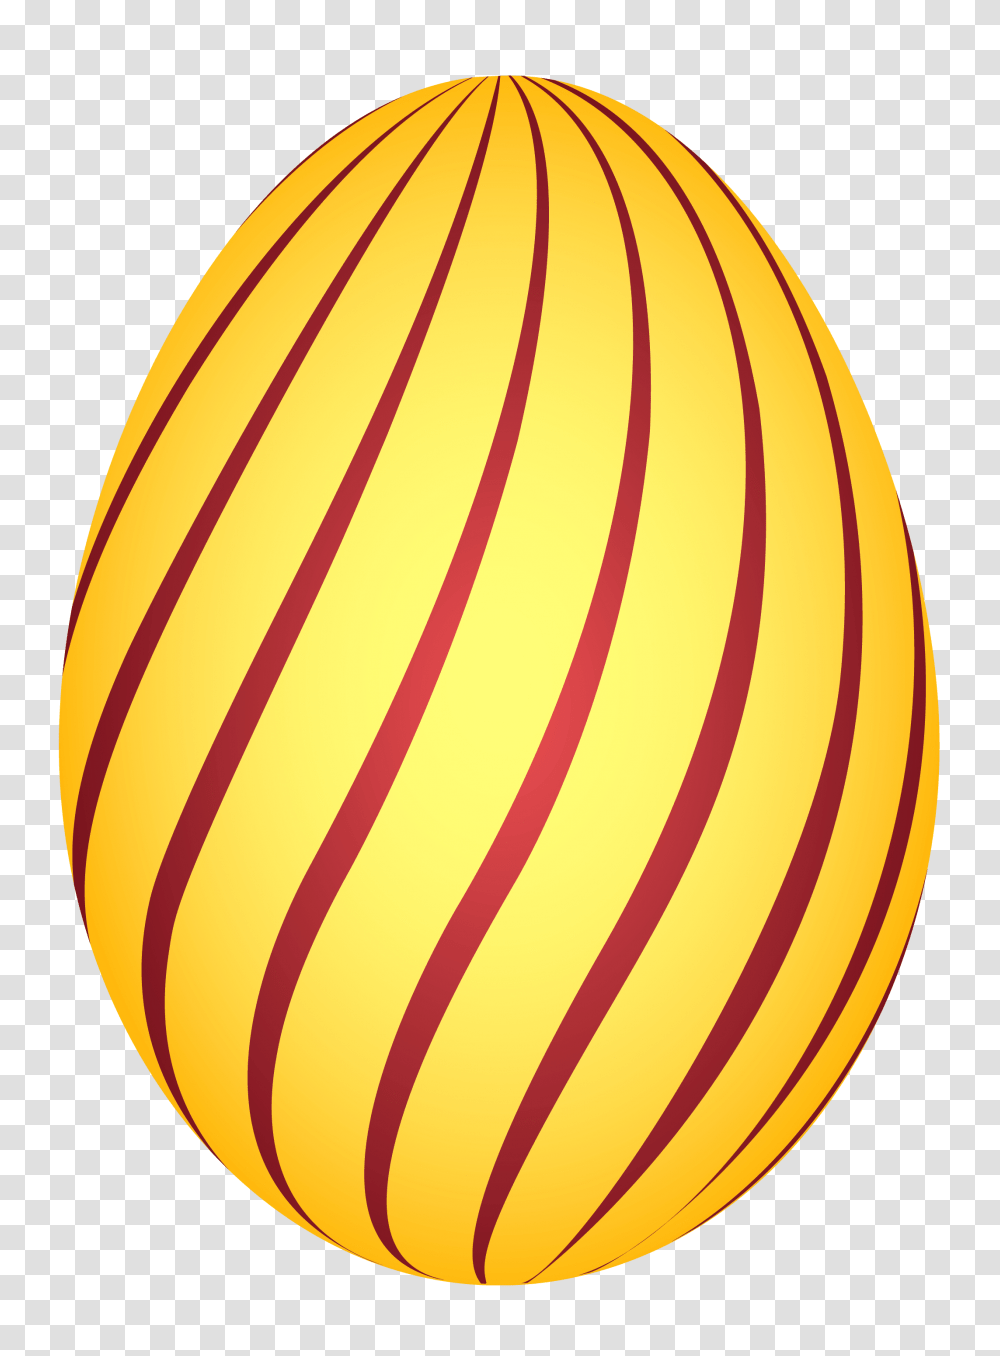 Free Egg Egg Clip Art Egg Images Image, Easter Egg, Food, Banana, Fruit Transparent Png